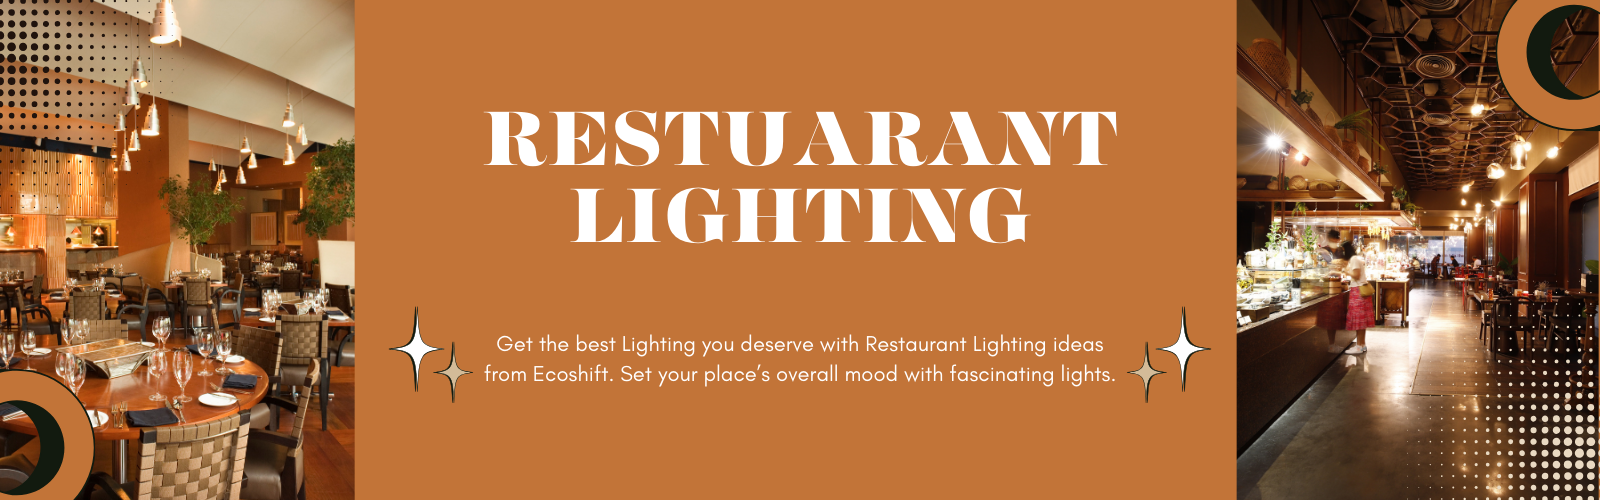 Restaurant Lighting